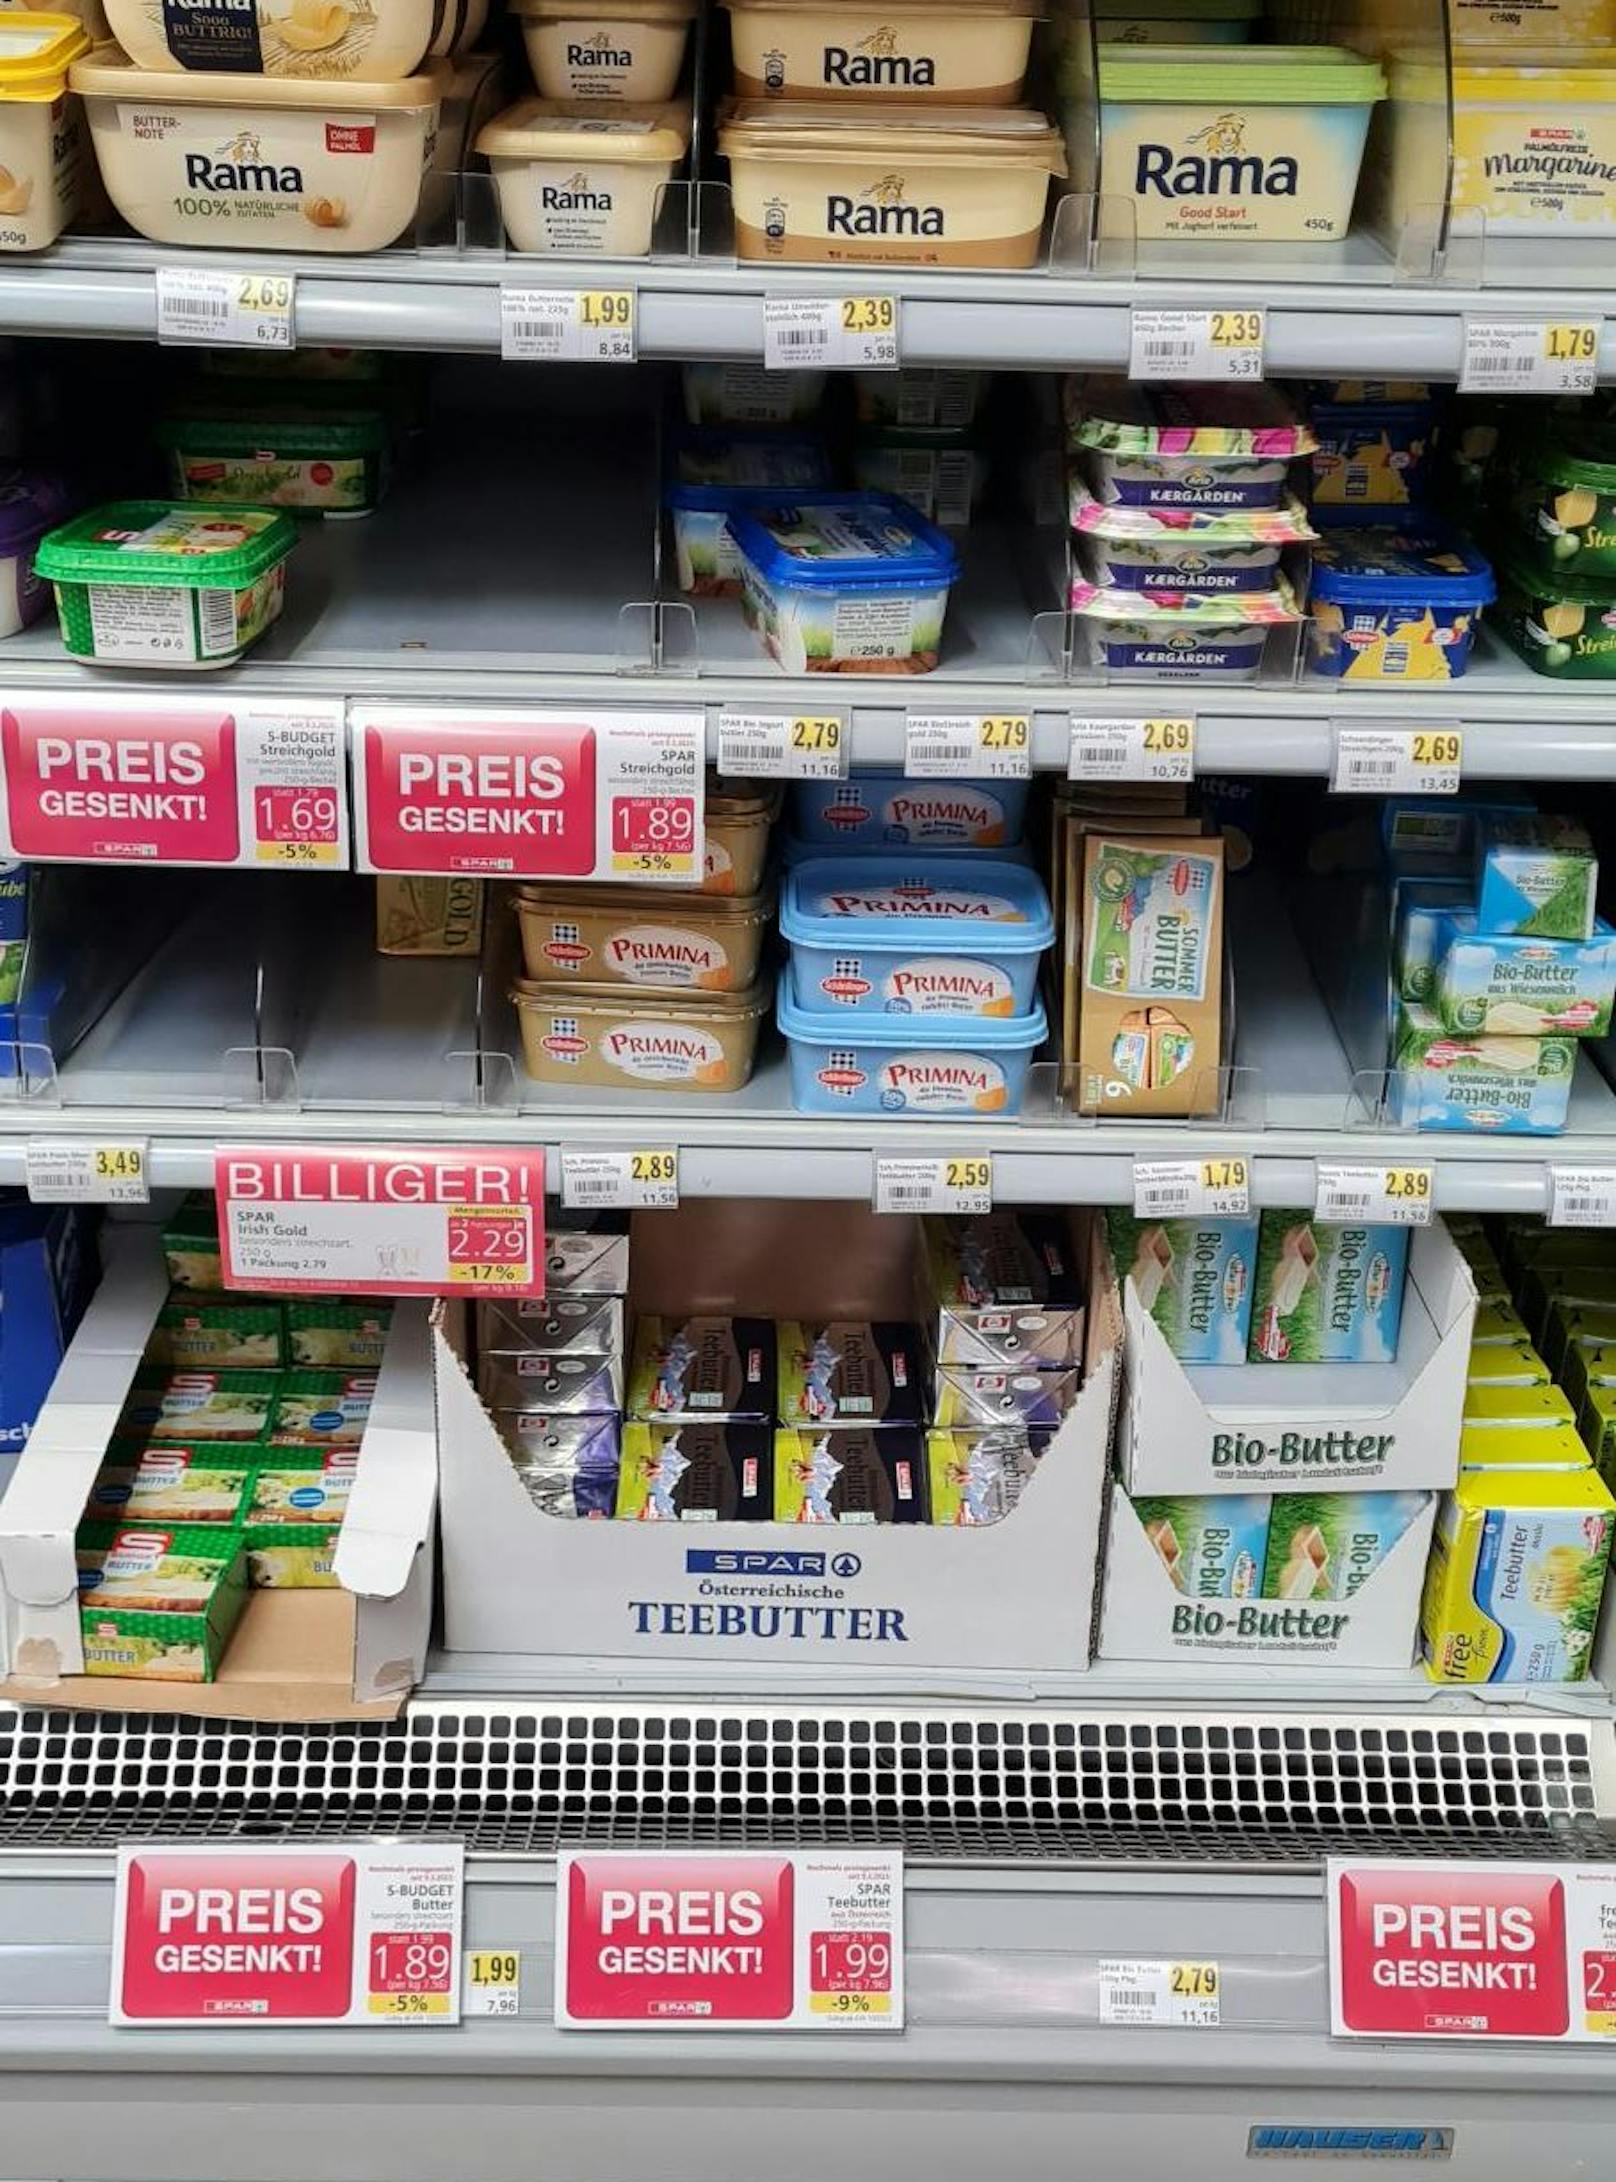 Preis gesenkt! Die Butter ist wieder ab 1,69 Euro zu haben.